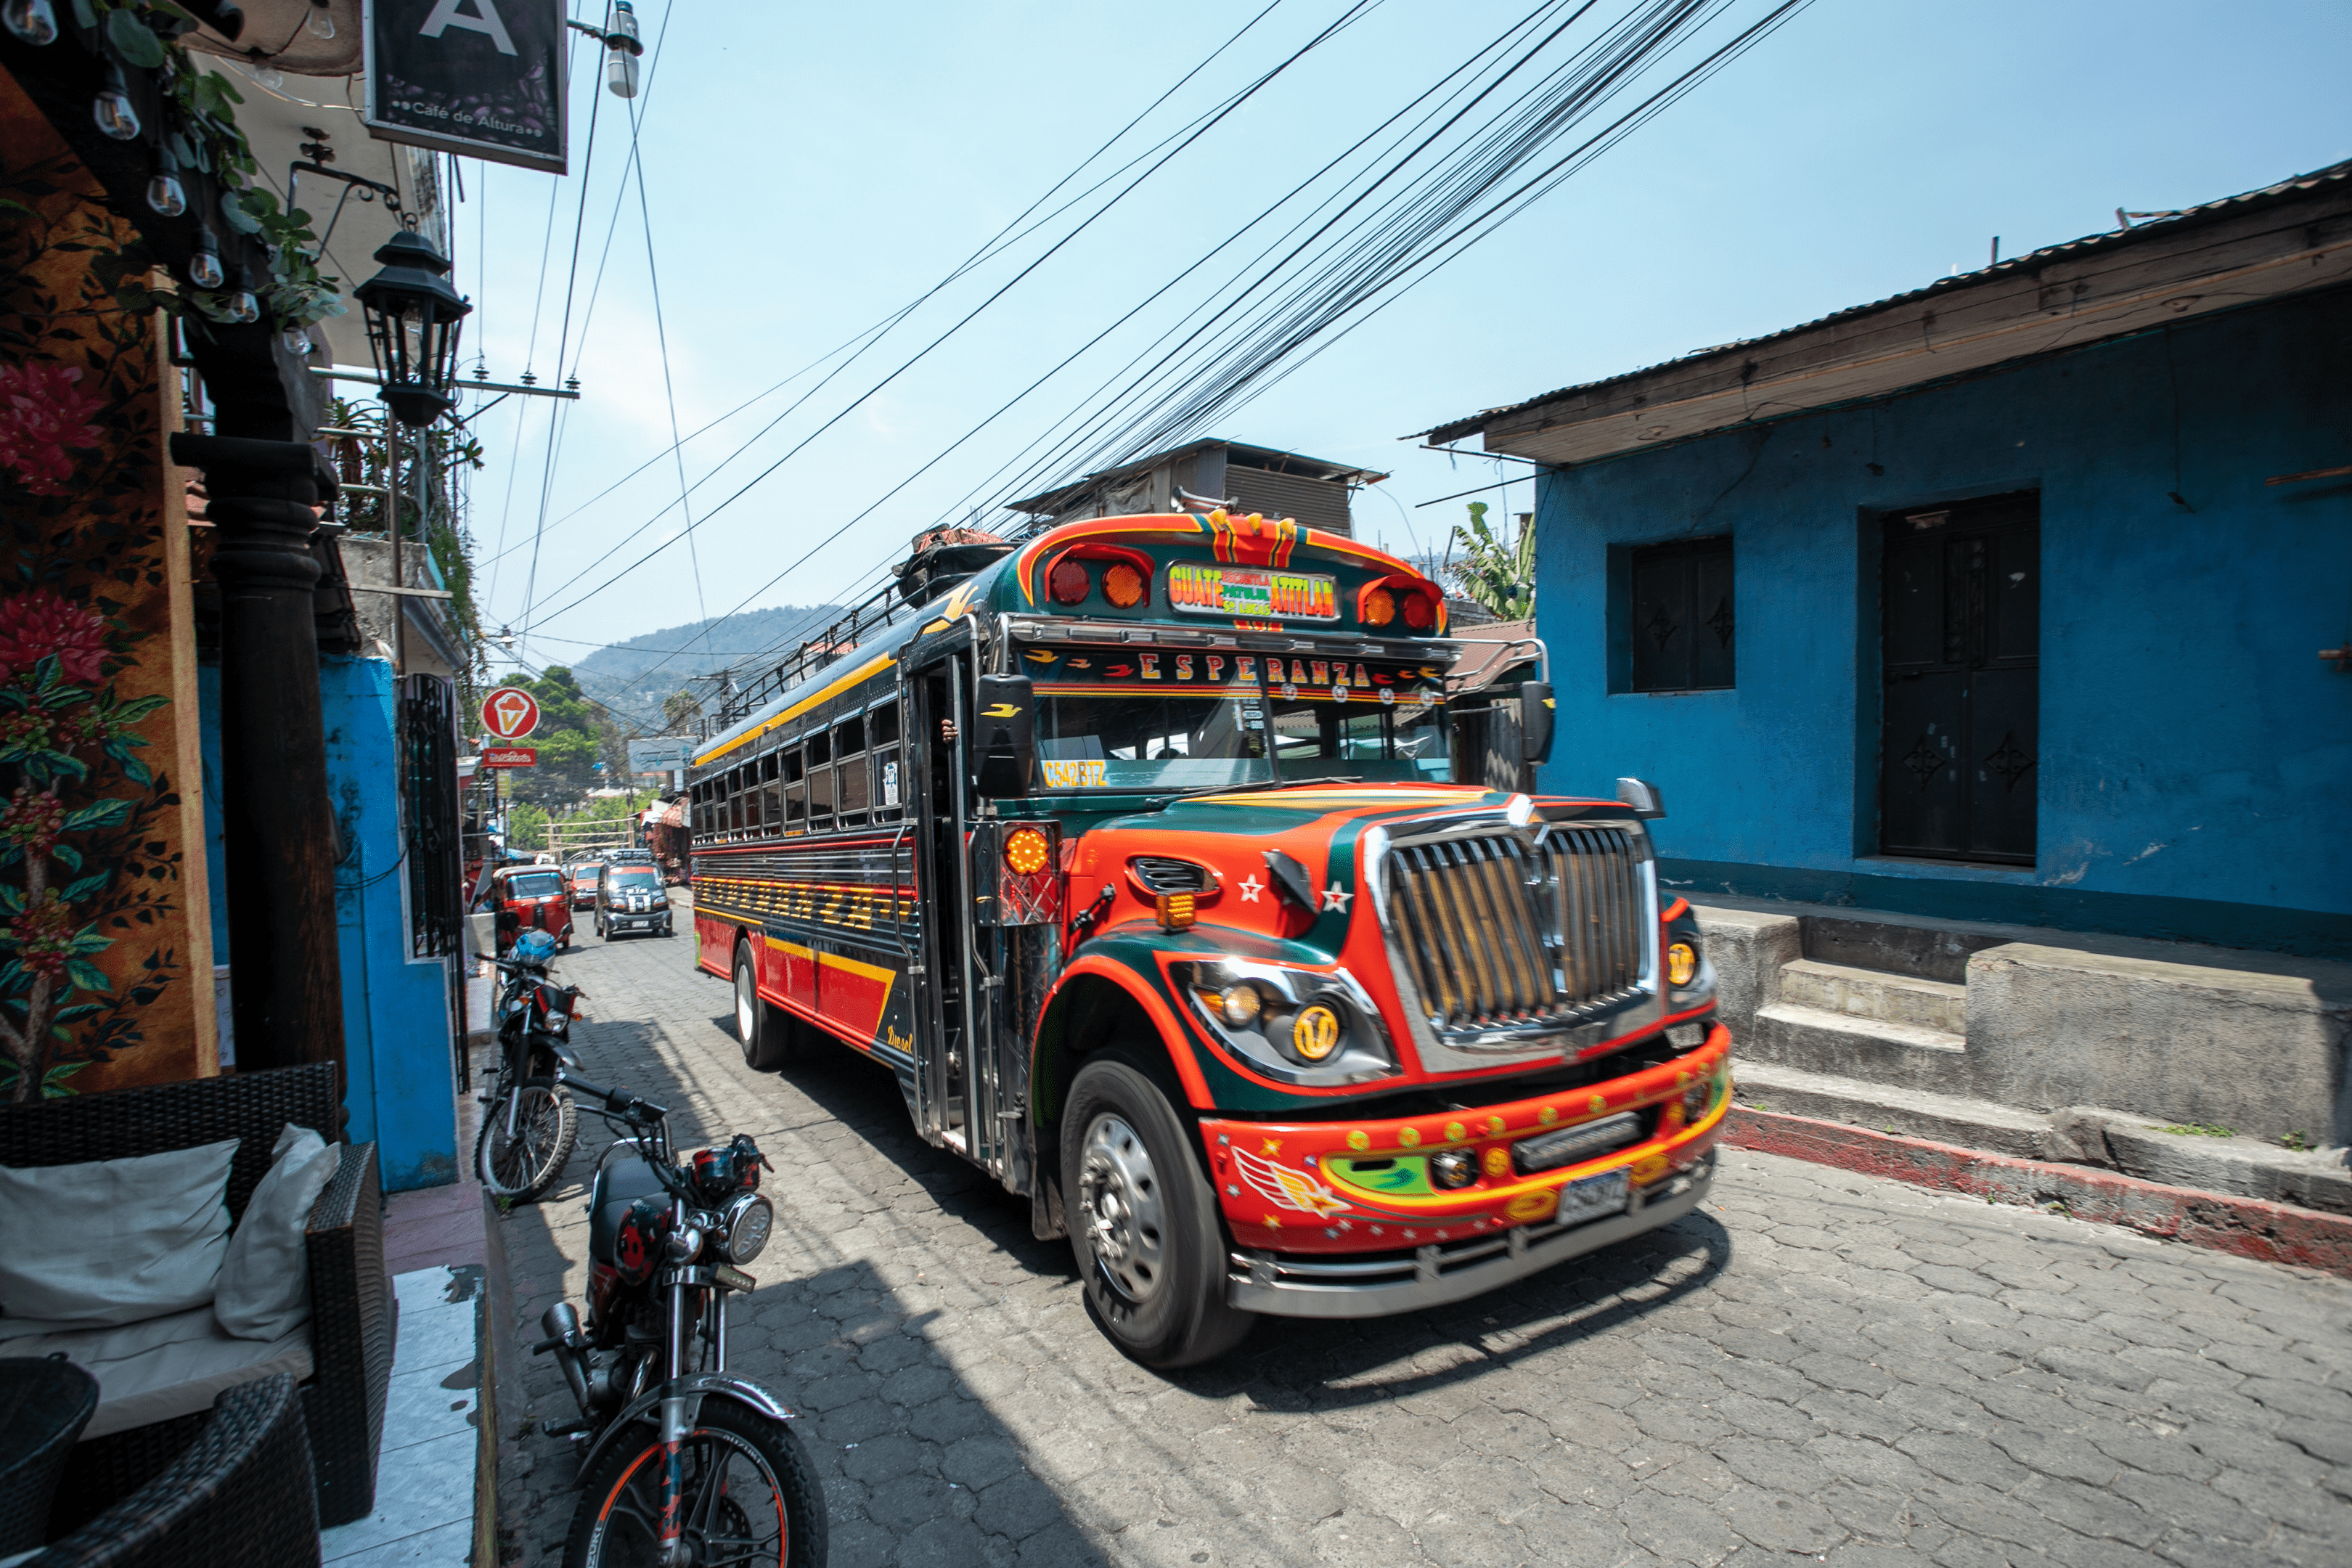 Chicken bus in the streets of San Pedro La Laguna.